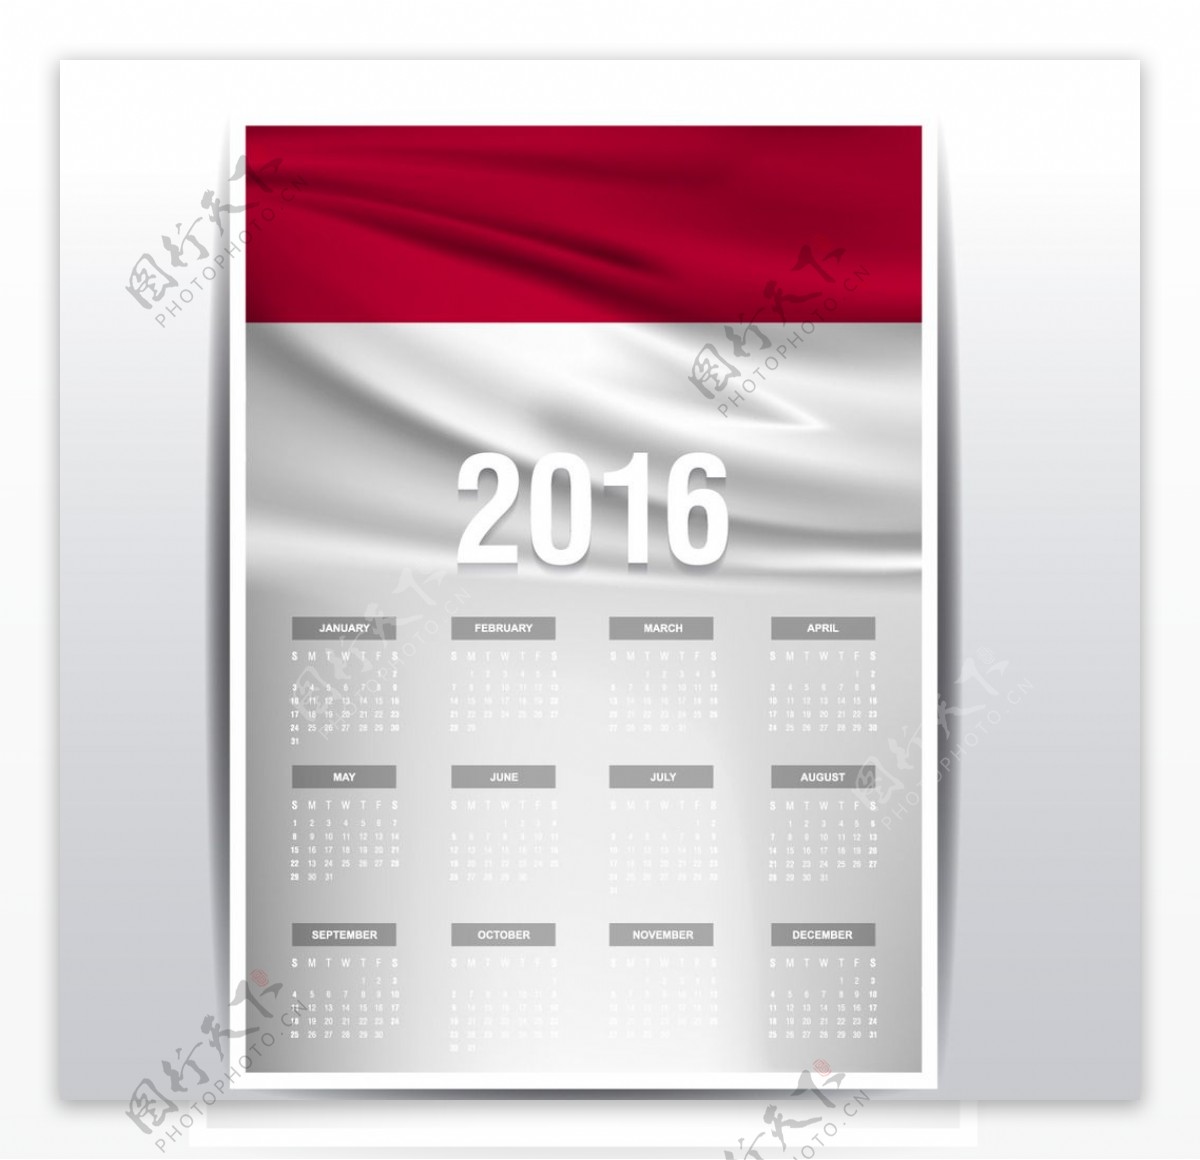 印度尼西亚国旗日历